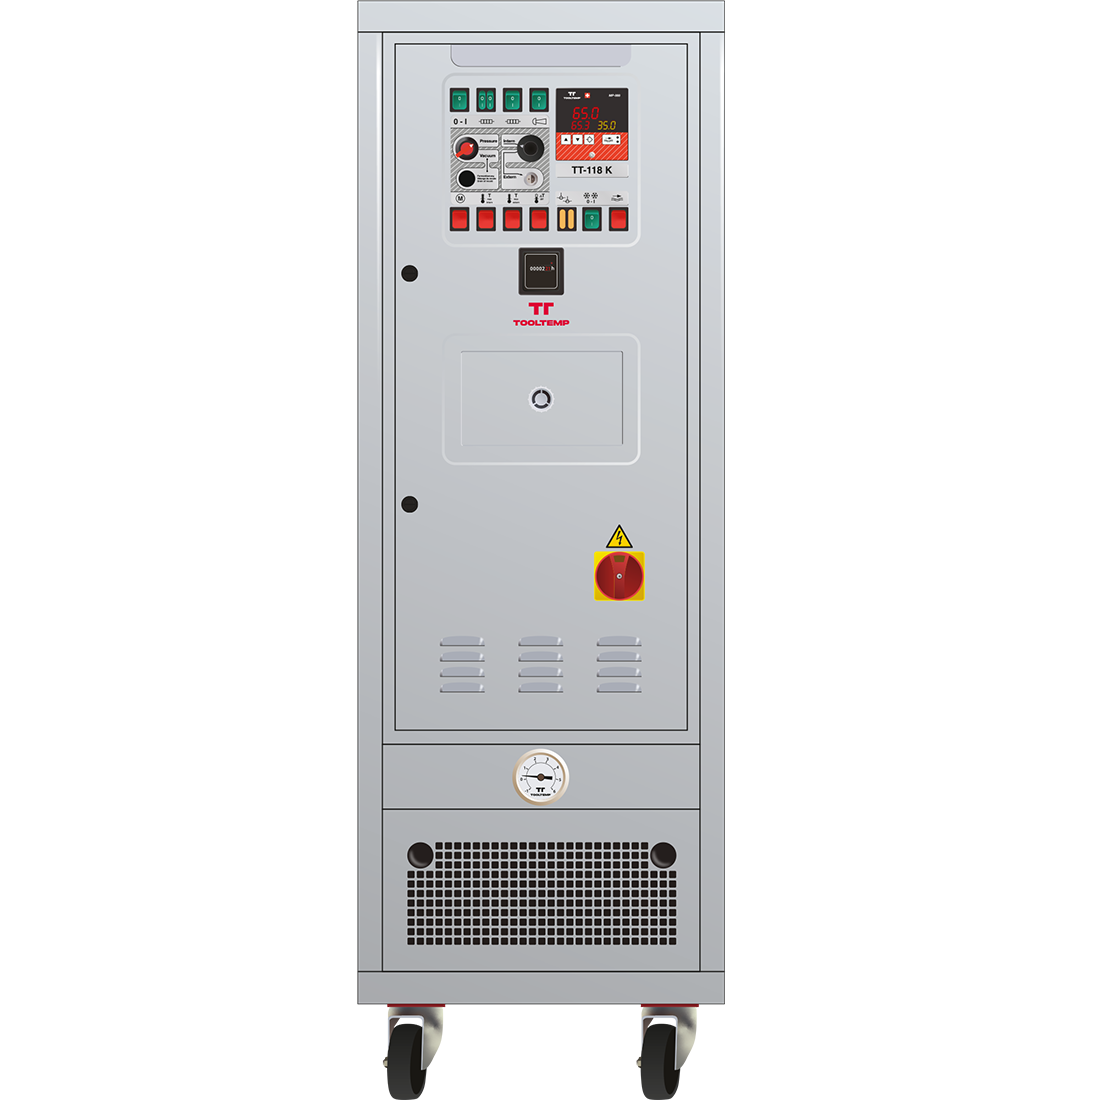 Tool-Temp - Equipos de control de temperatura de agua - CLASSIC Water TT-118 K 18 kW